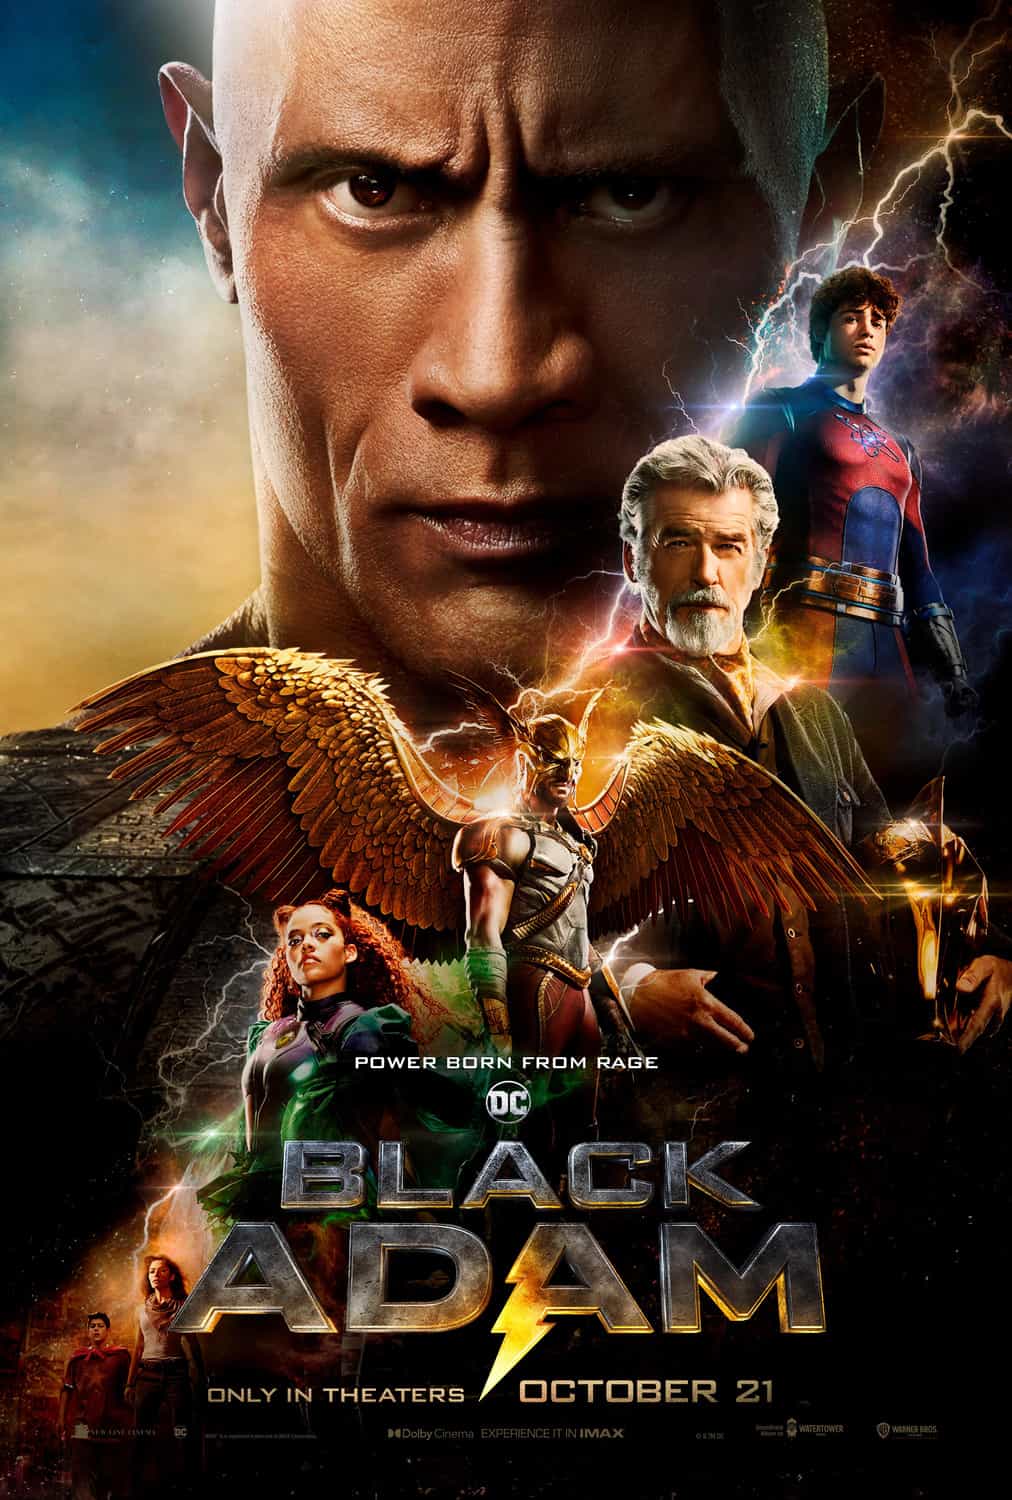 Full trailer for Black Adam starring Dwayne Johnson - movie UK release date 21st October 2022 #blackadam